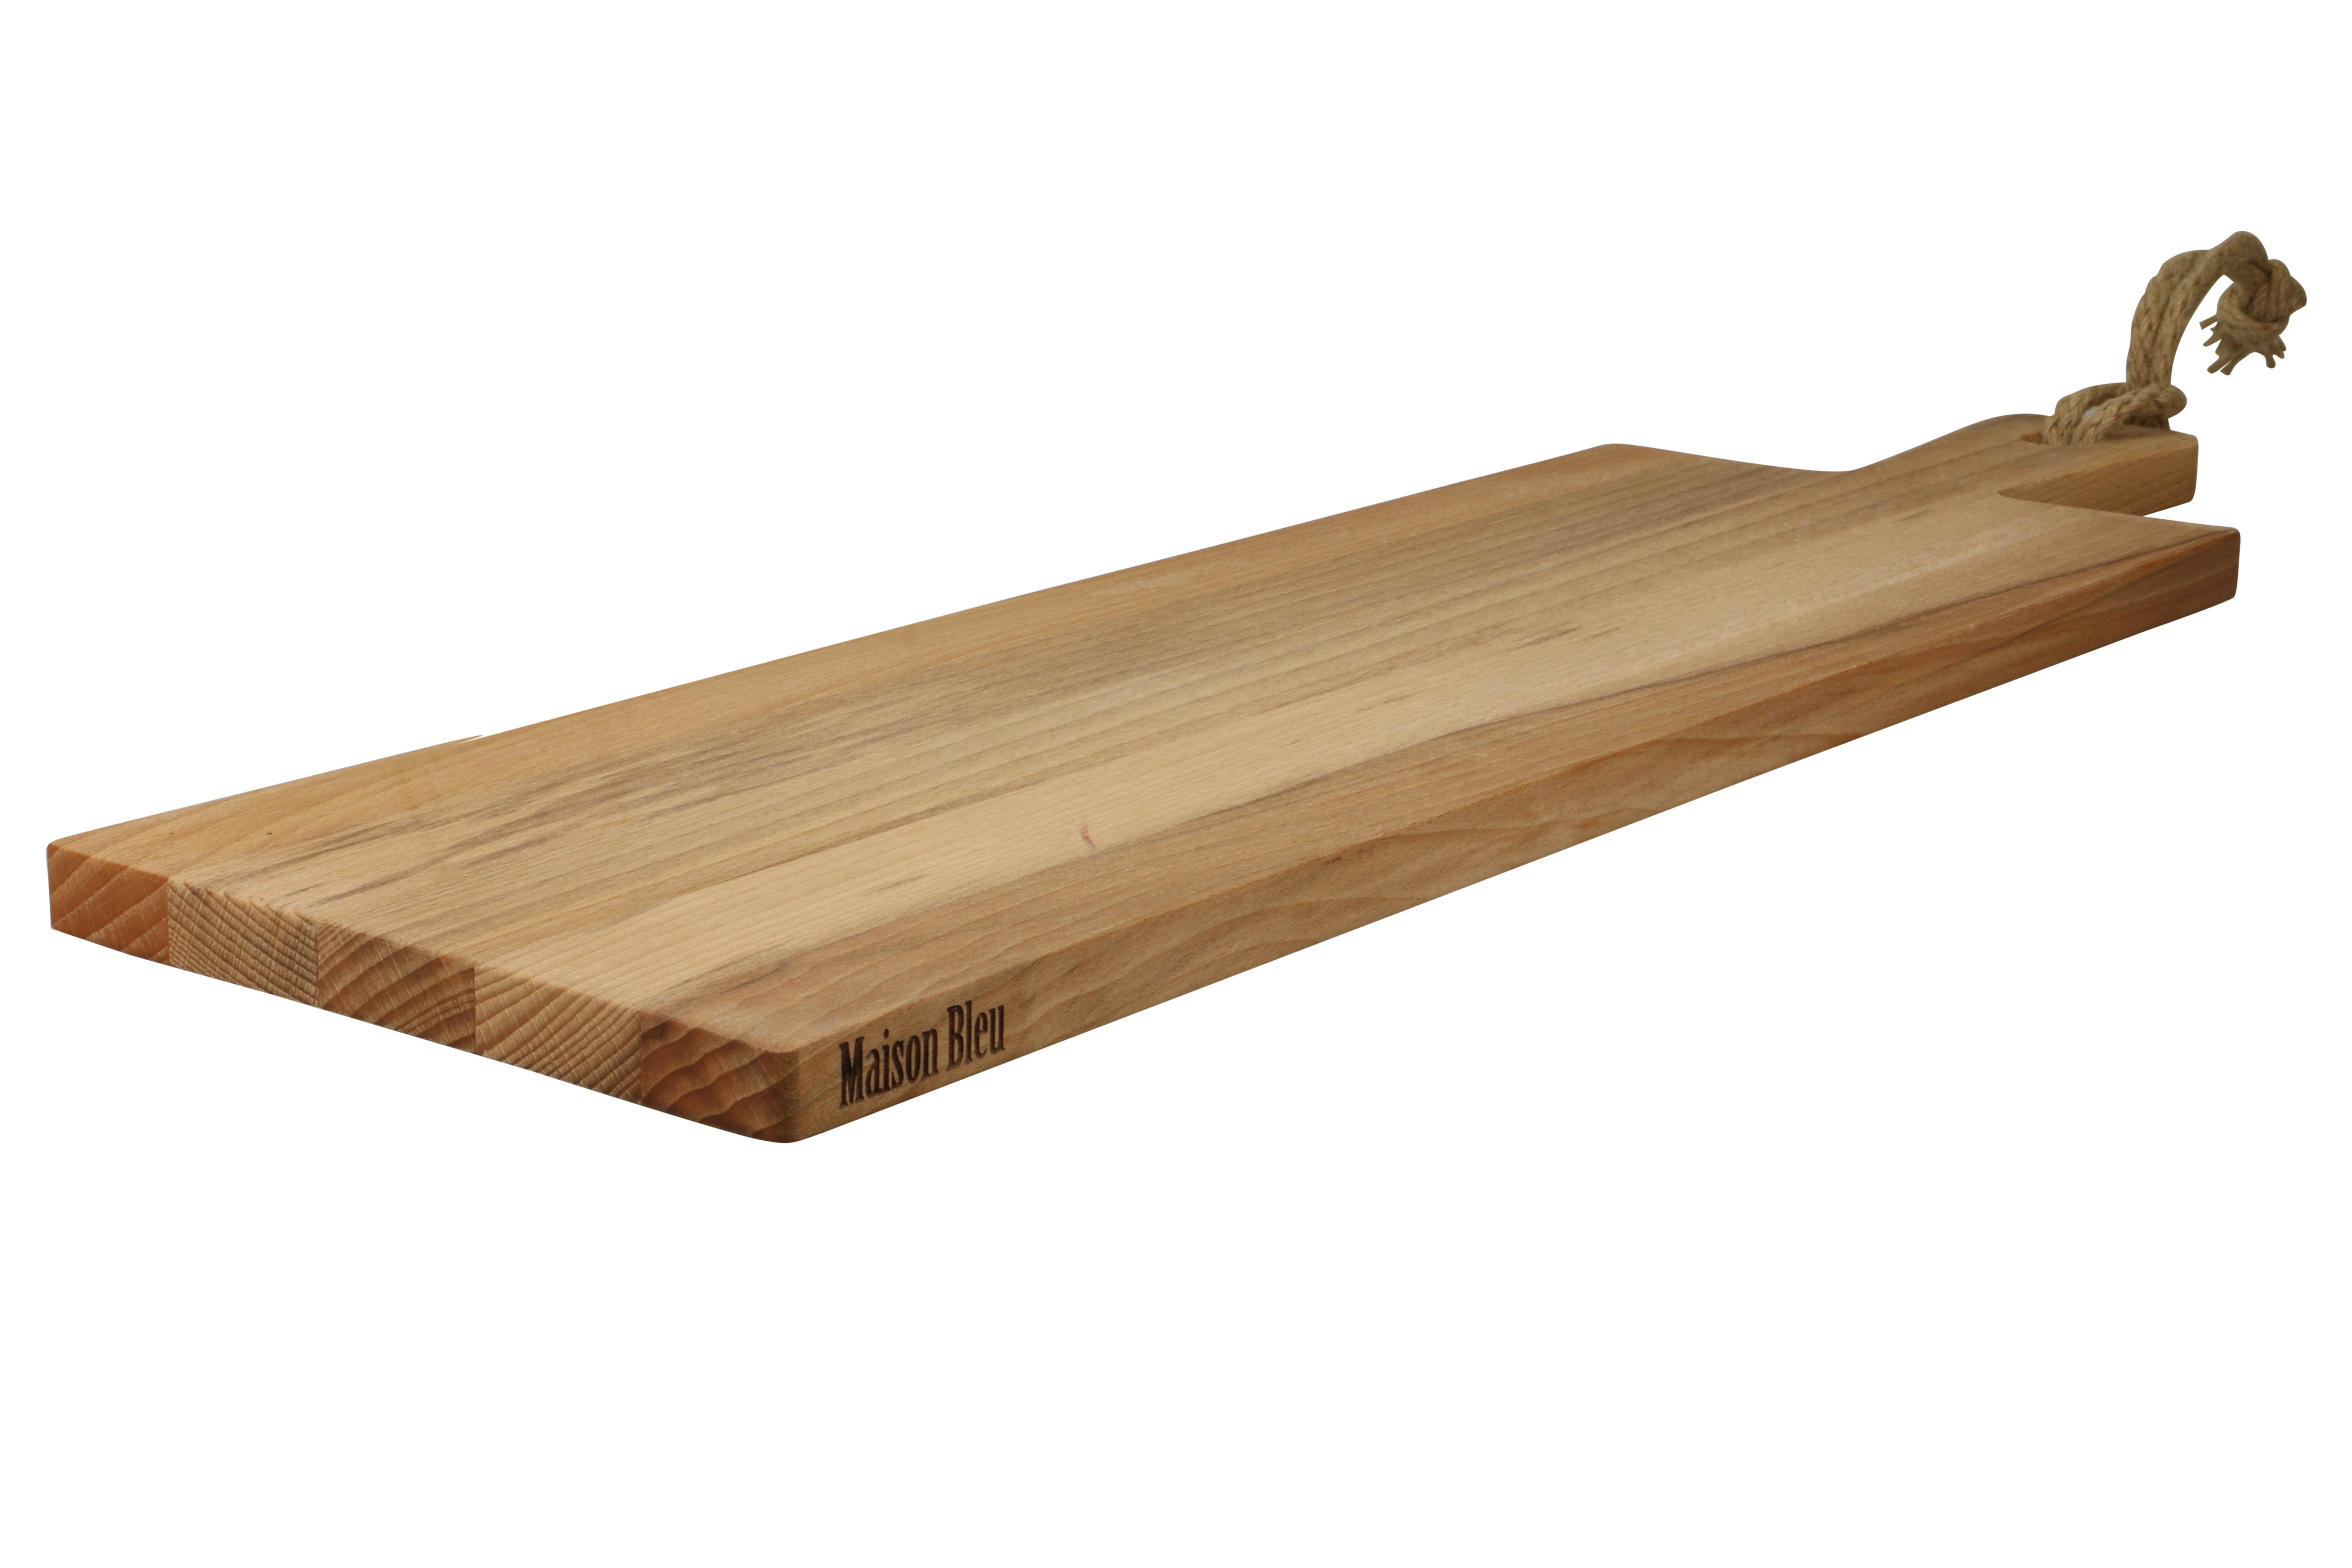 Afbeelding voor categorie Planken